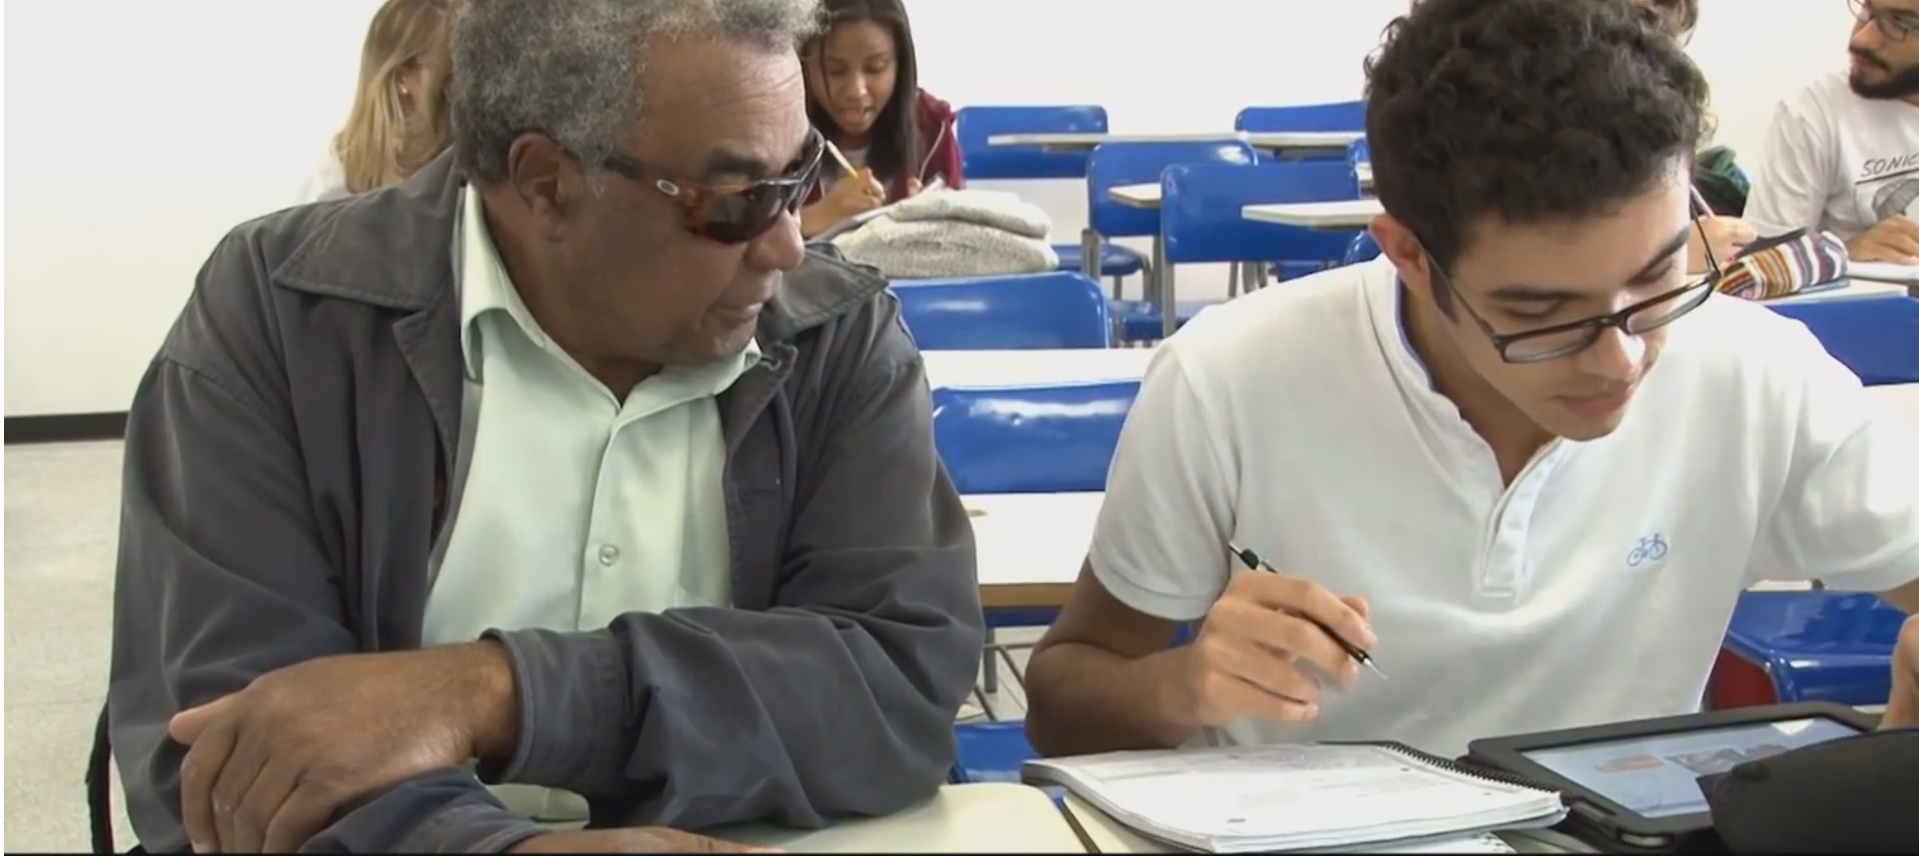 Homem idoso com deficiência visual presta atenção em jovem sentado ao lado direito, que manuseia caderno e tablet. Eles estão em uma sala de aula, sentados lado a lado em mesas escolares.